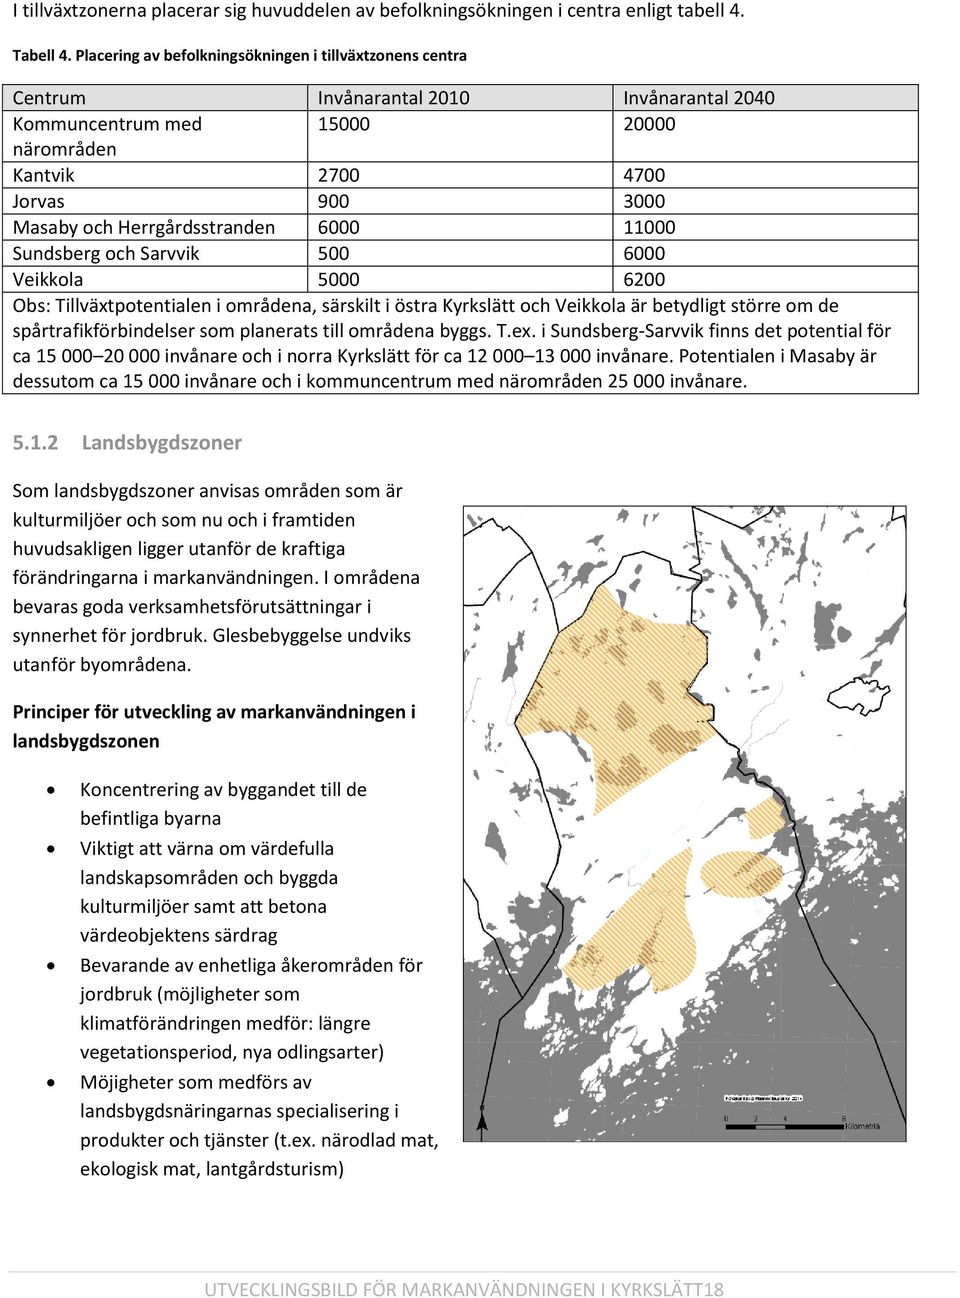 Herrgårdsstranden 6000 11000 Sundsberg och Sarvvik 500 6000 Veikkola 5000 6200 Obs: Tillväxtpotentialen i områdena, särskilt i östra Kyrkslätt och Veikkola är betydligt större om de